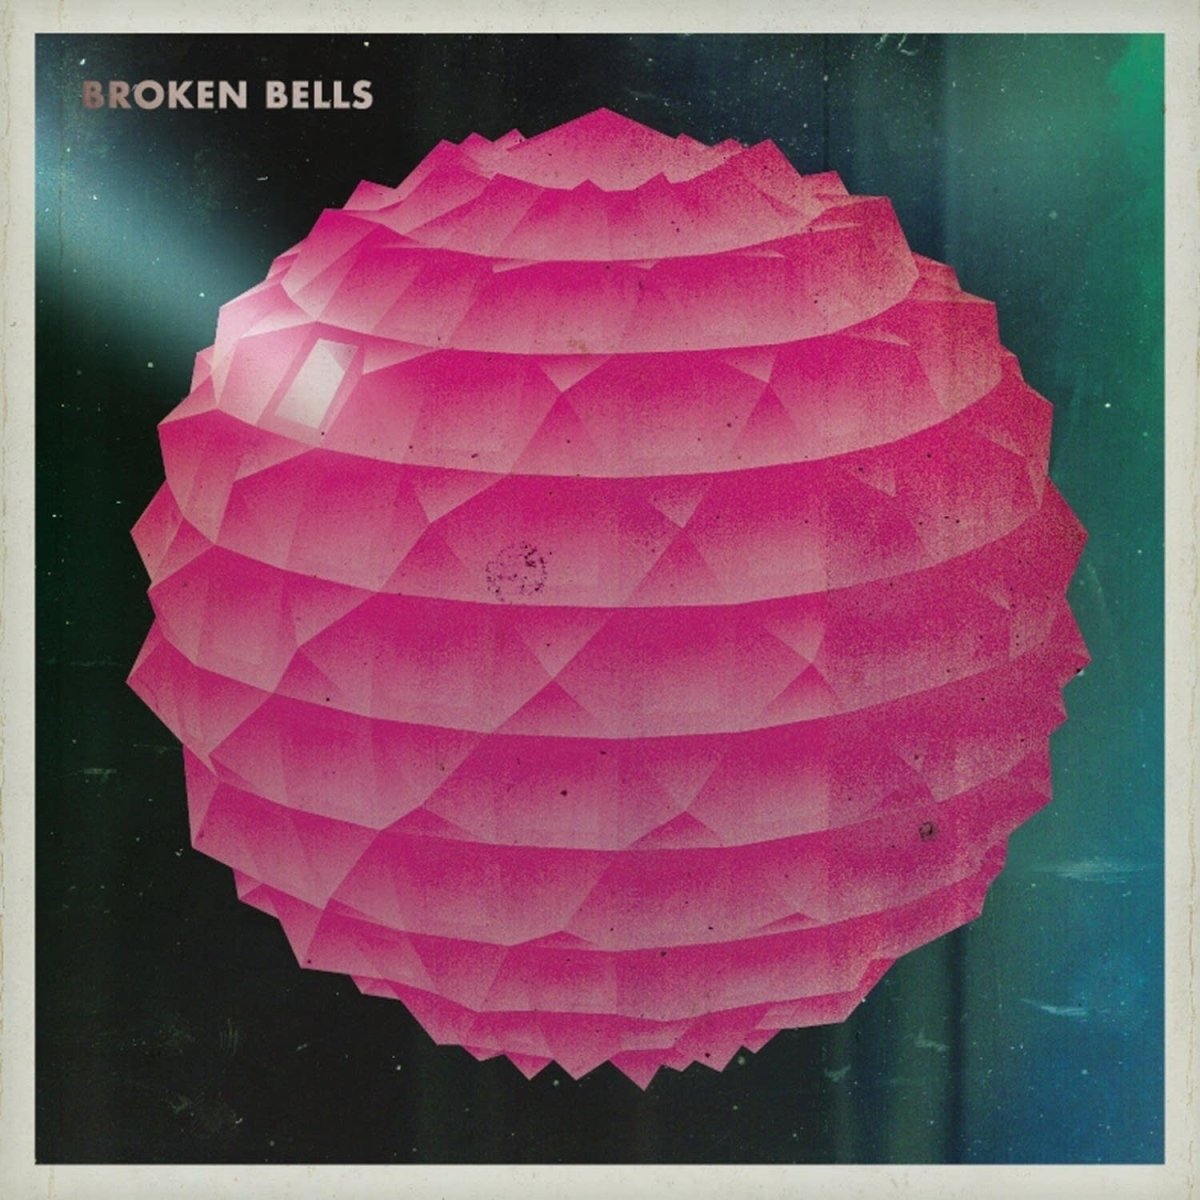 Broken Bells - Broken Bells [New Vinyl] - Tonality Records